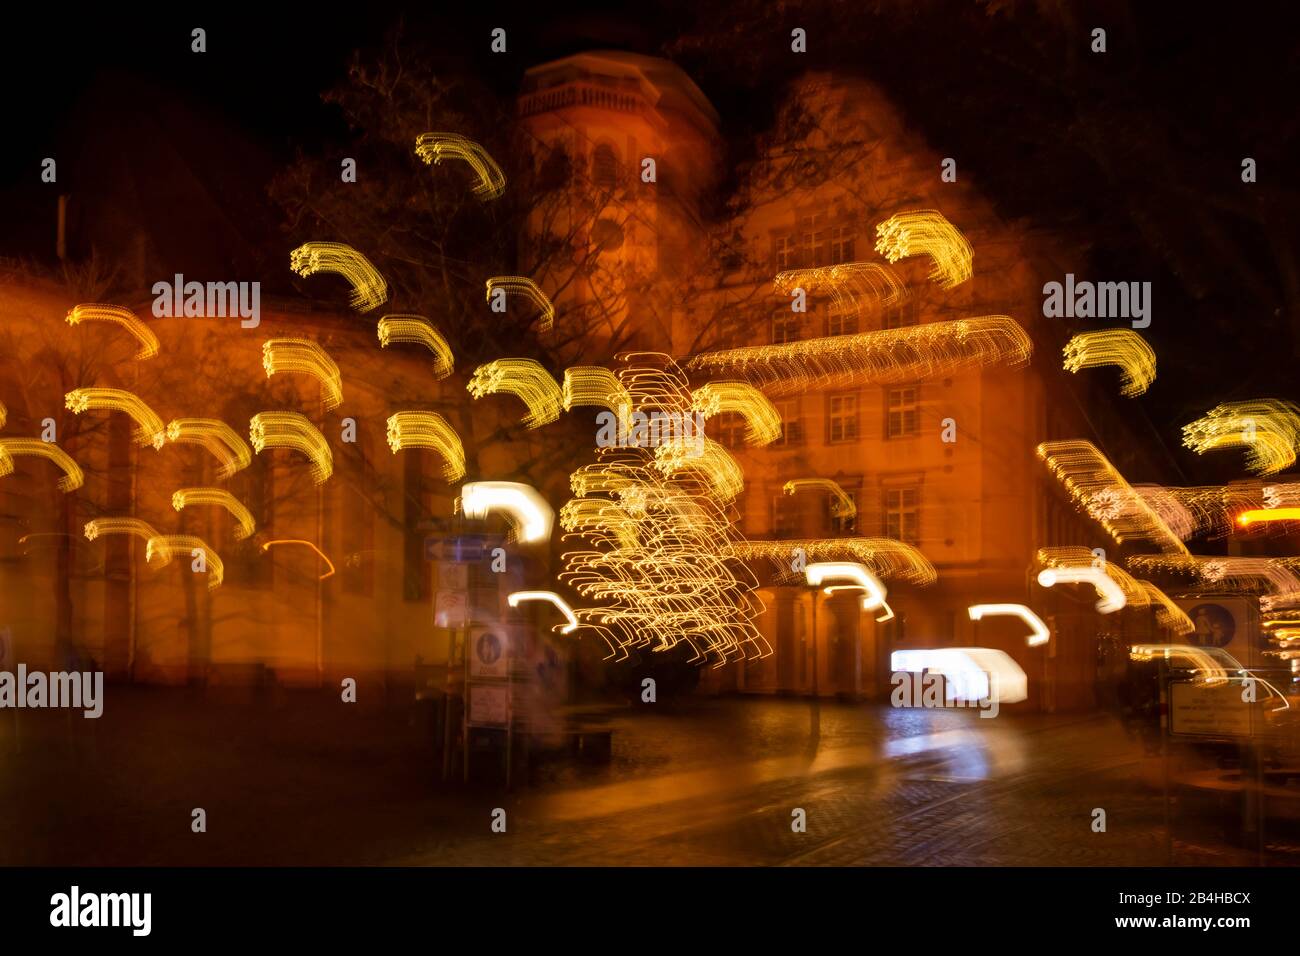 Deutschland, Baden-Württemberg, Karlsruhe, Weihnachtsbeleuchtung mit Bewegungsunschärfe im Stadtteil Durlach. Stock Photo